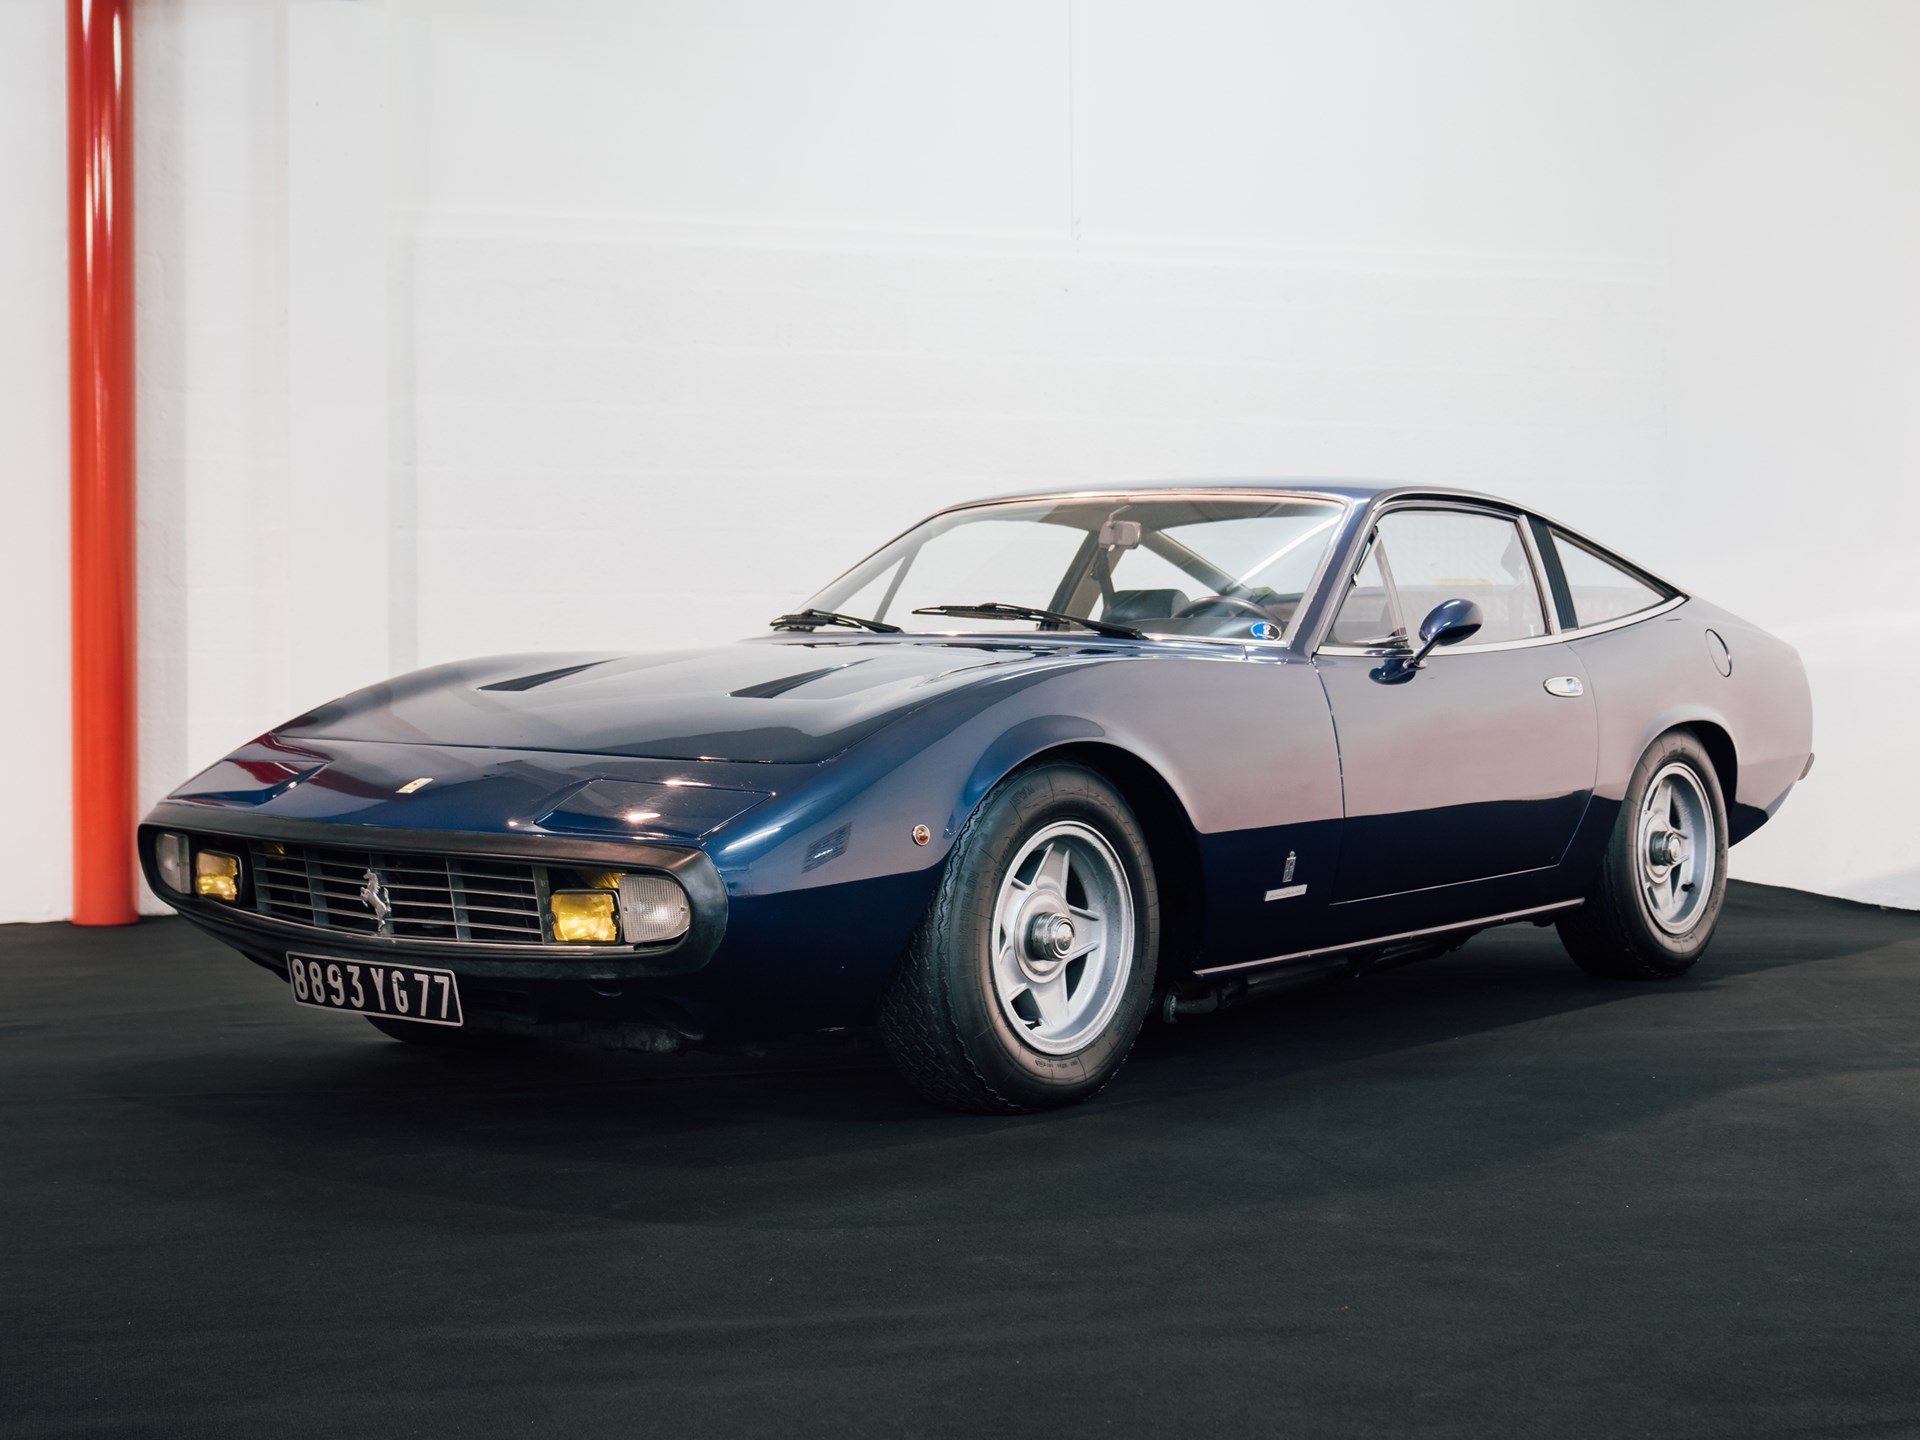 Ferrari 365. Ferrari 365 GTC. Ferrari 365 GTC/4. Ferrari 365 GTC 4 1971. 1972 Ferrari 365 GTC/4.